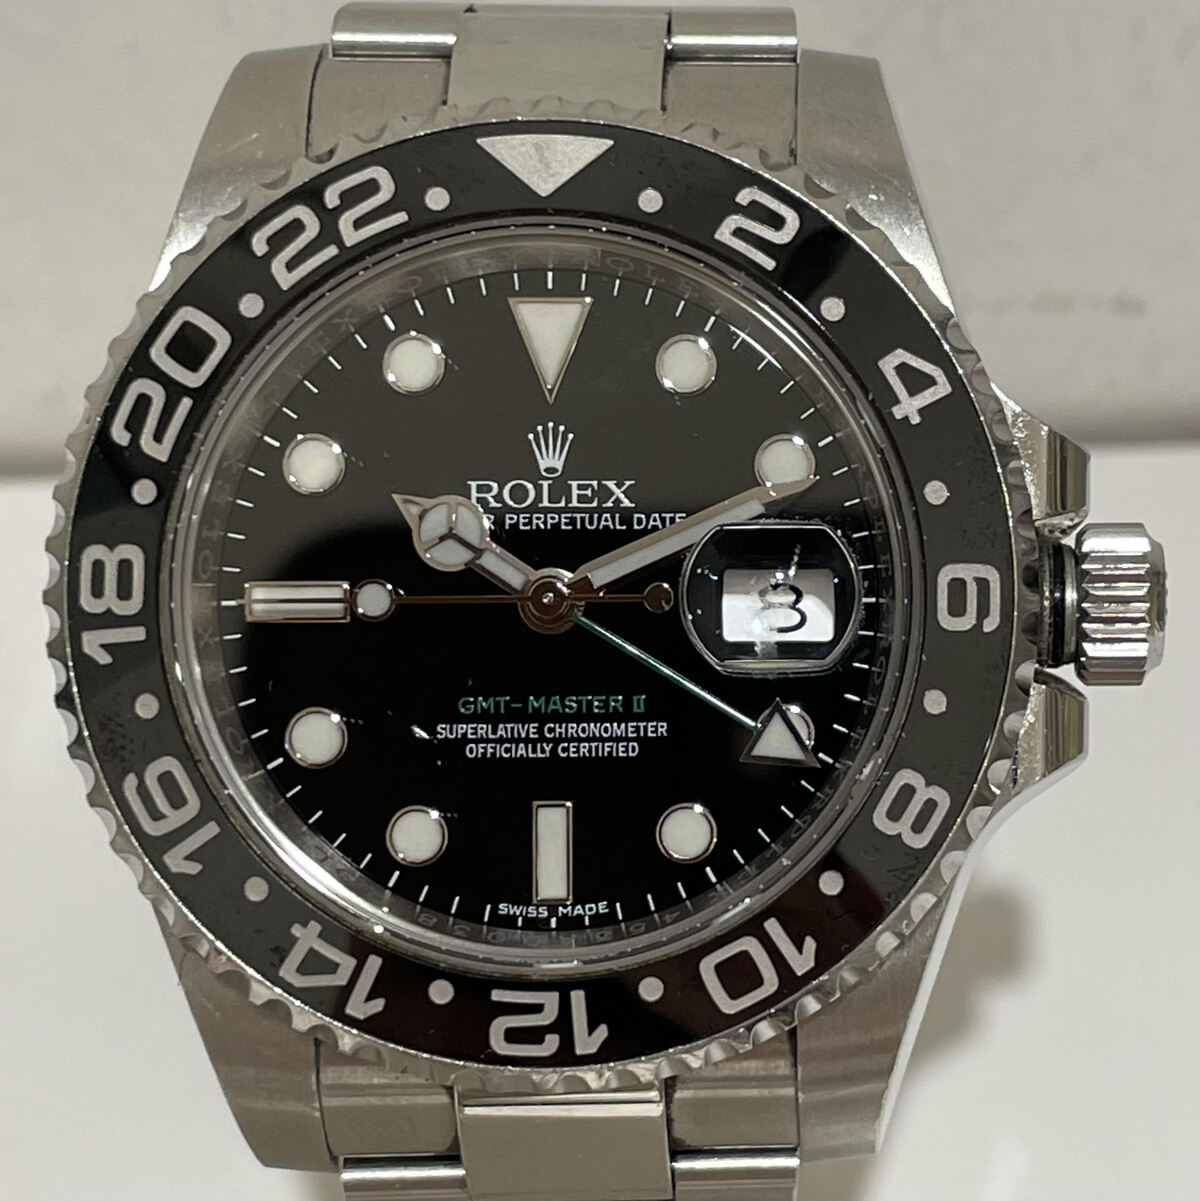 ロレックスのS/S 116710LN ランダム品番 GMTマスター2 黒文字盤 自動巻時計の買取実績です。